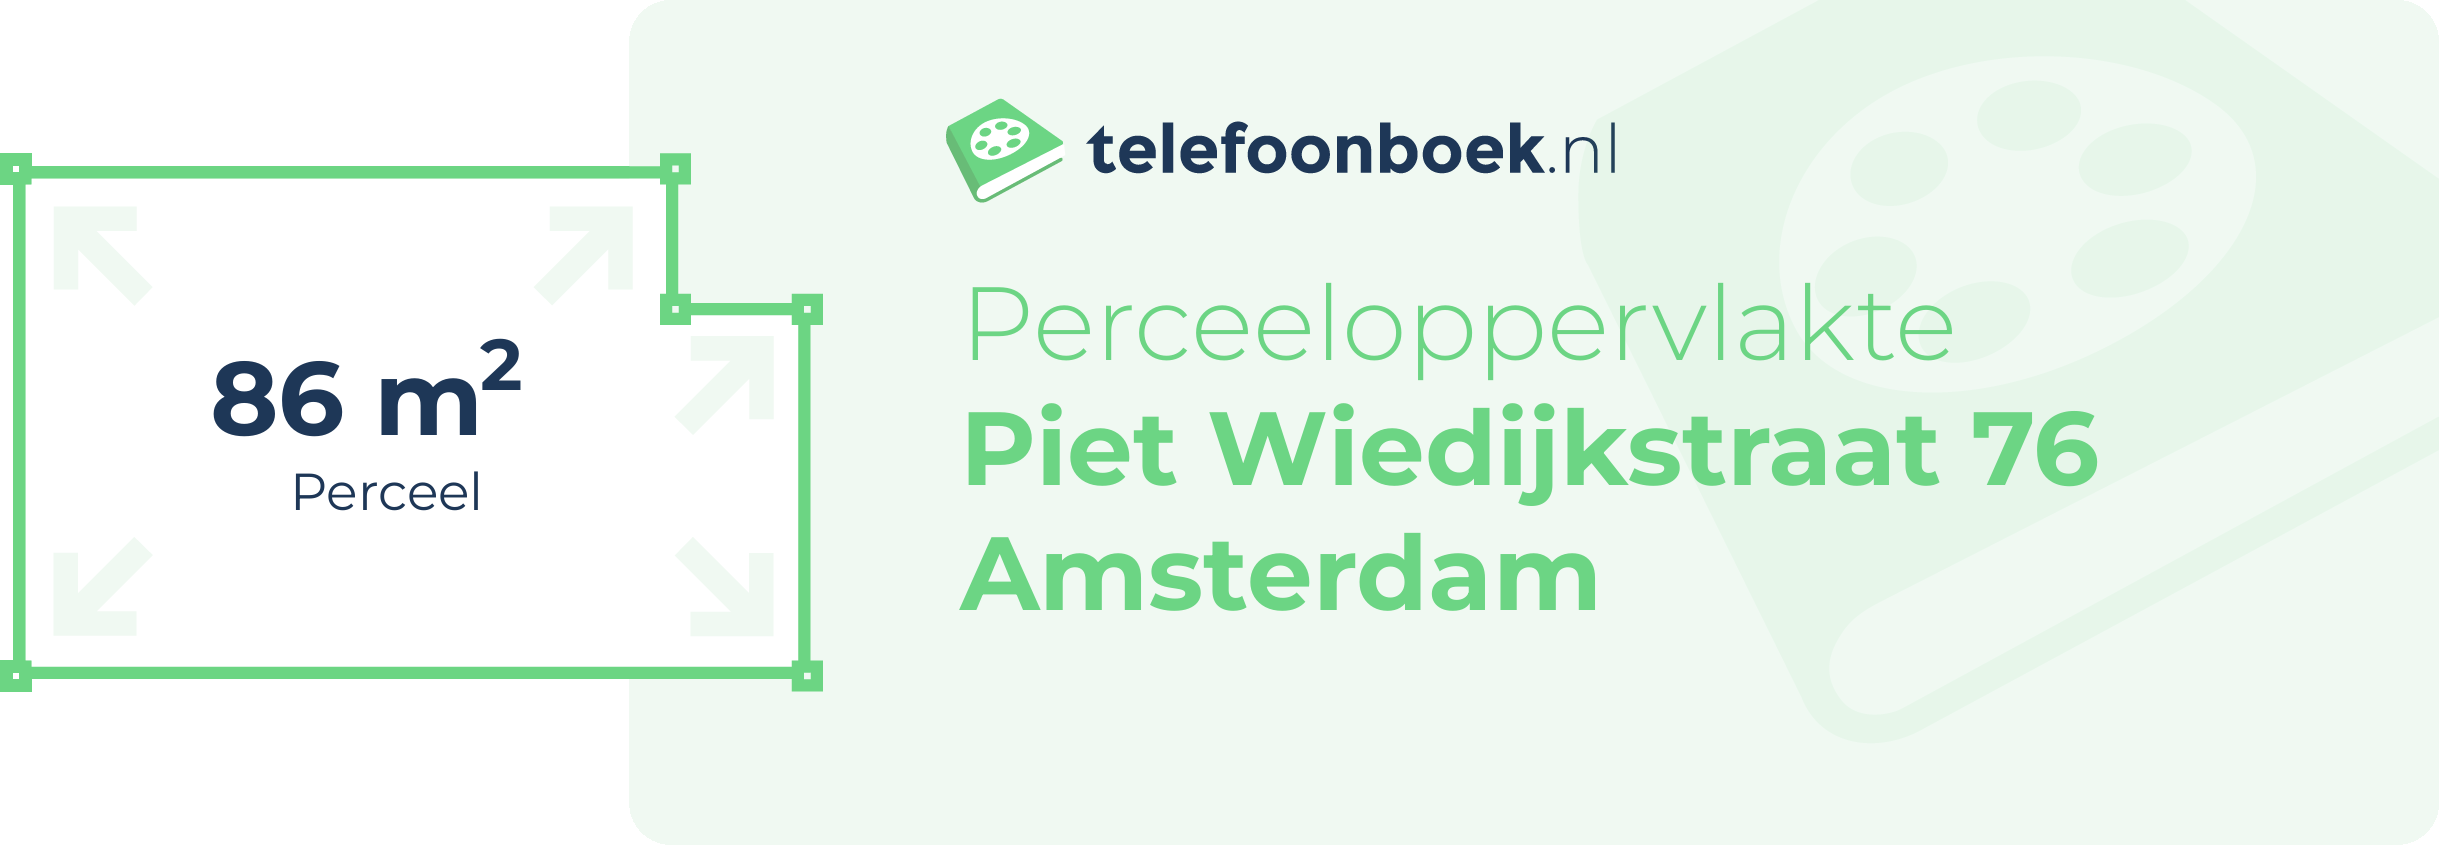 Perceeloppervlakte Piet Wiedijkstraat 76 Amsterdam